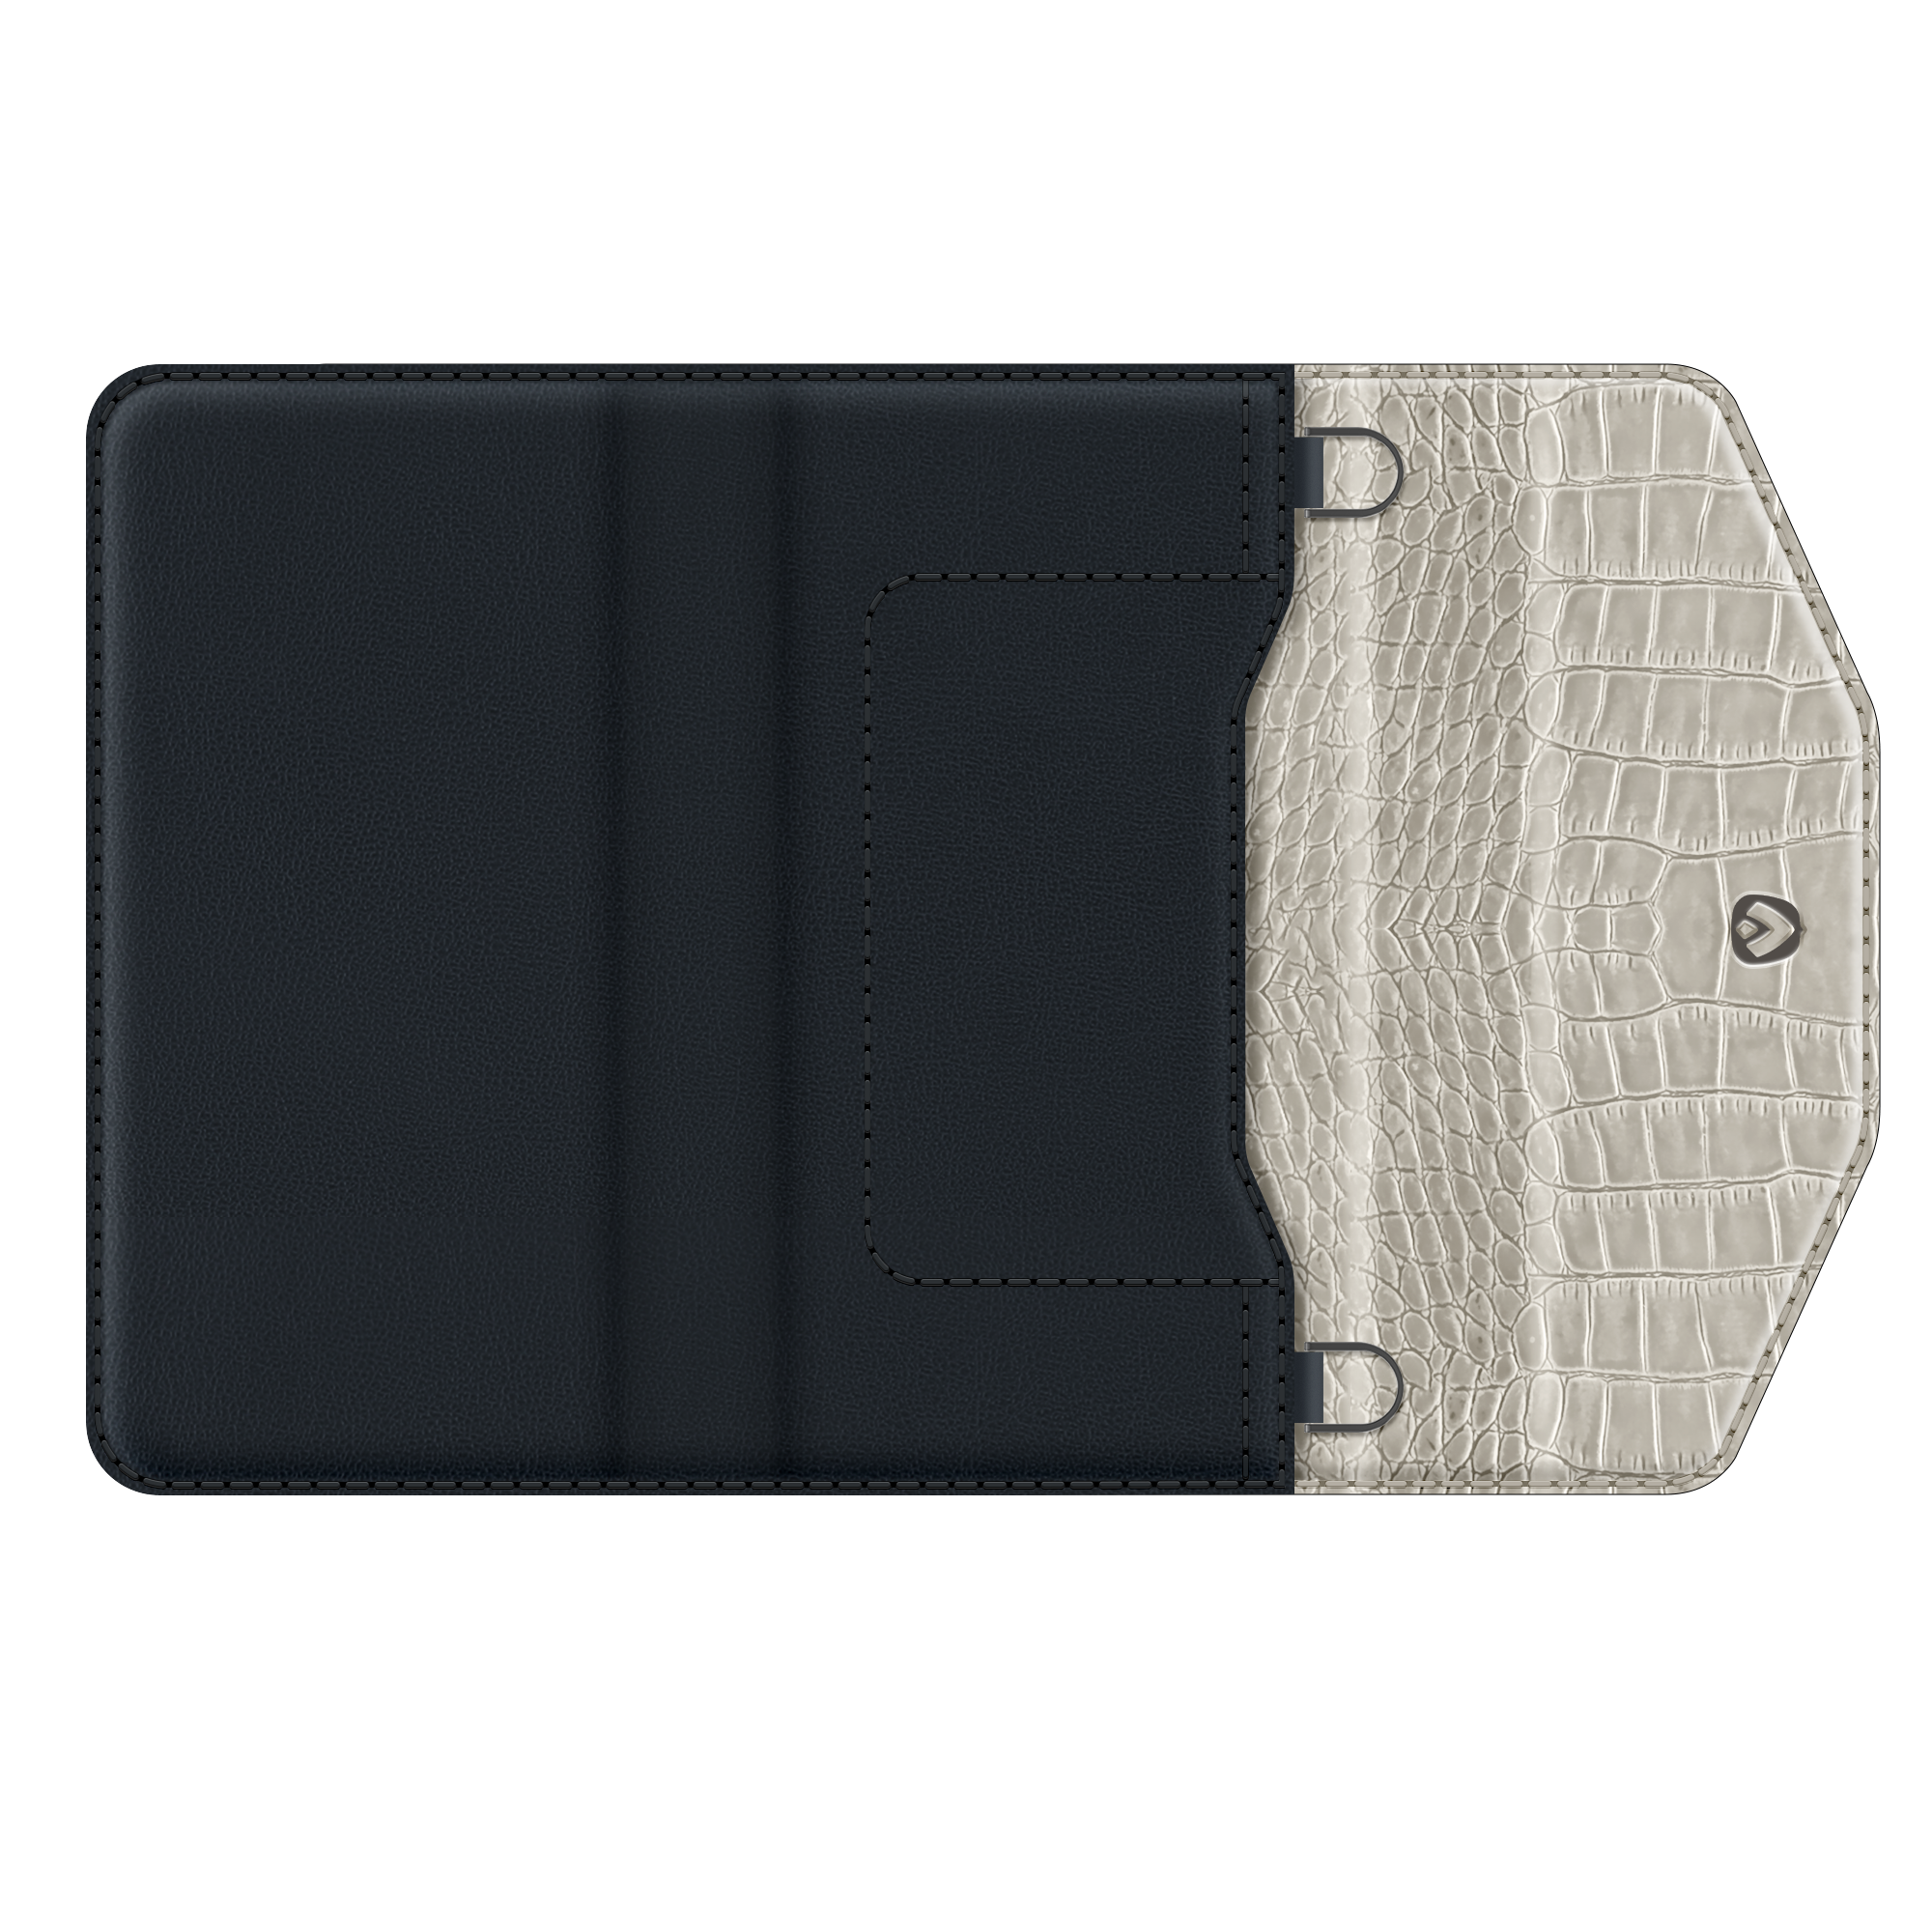 Entfernbare 2-in-1 Luxus Clutch iPhone 12 - 12 Pro Grau